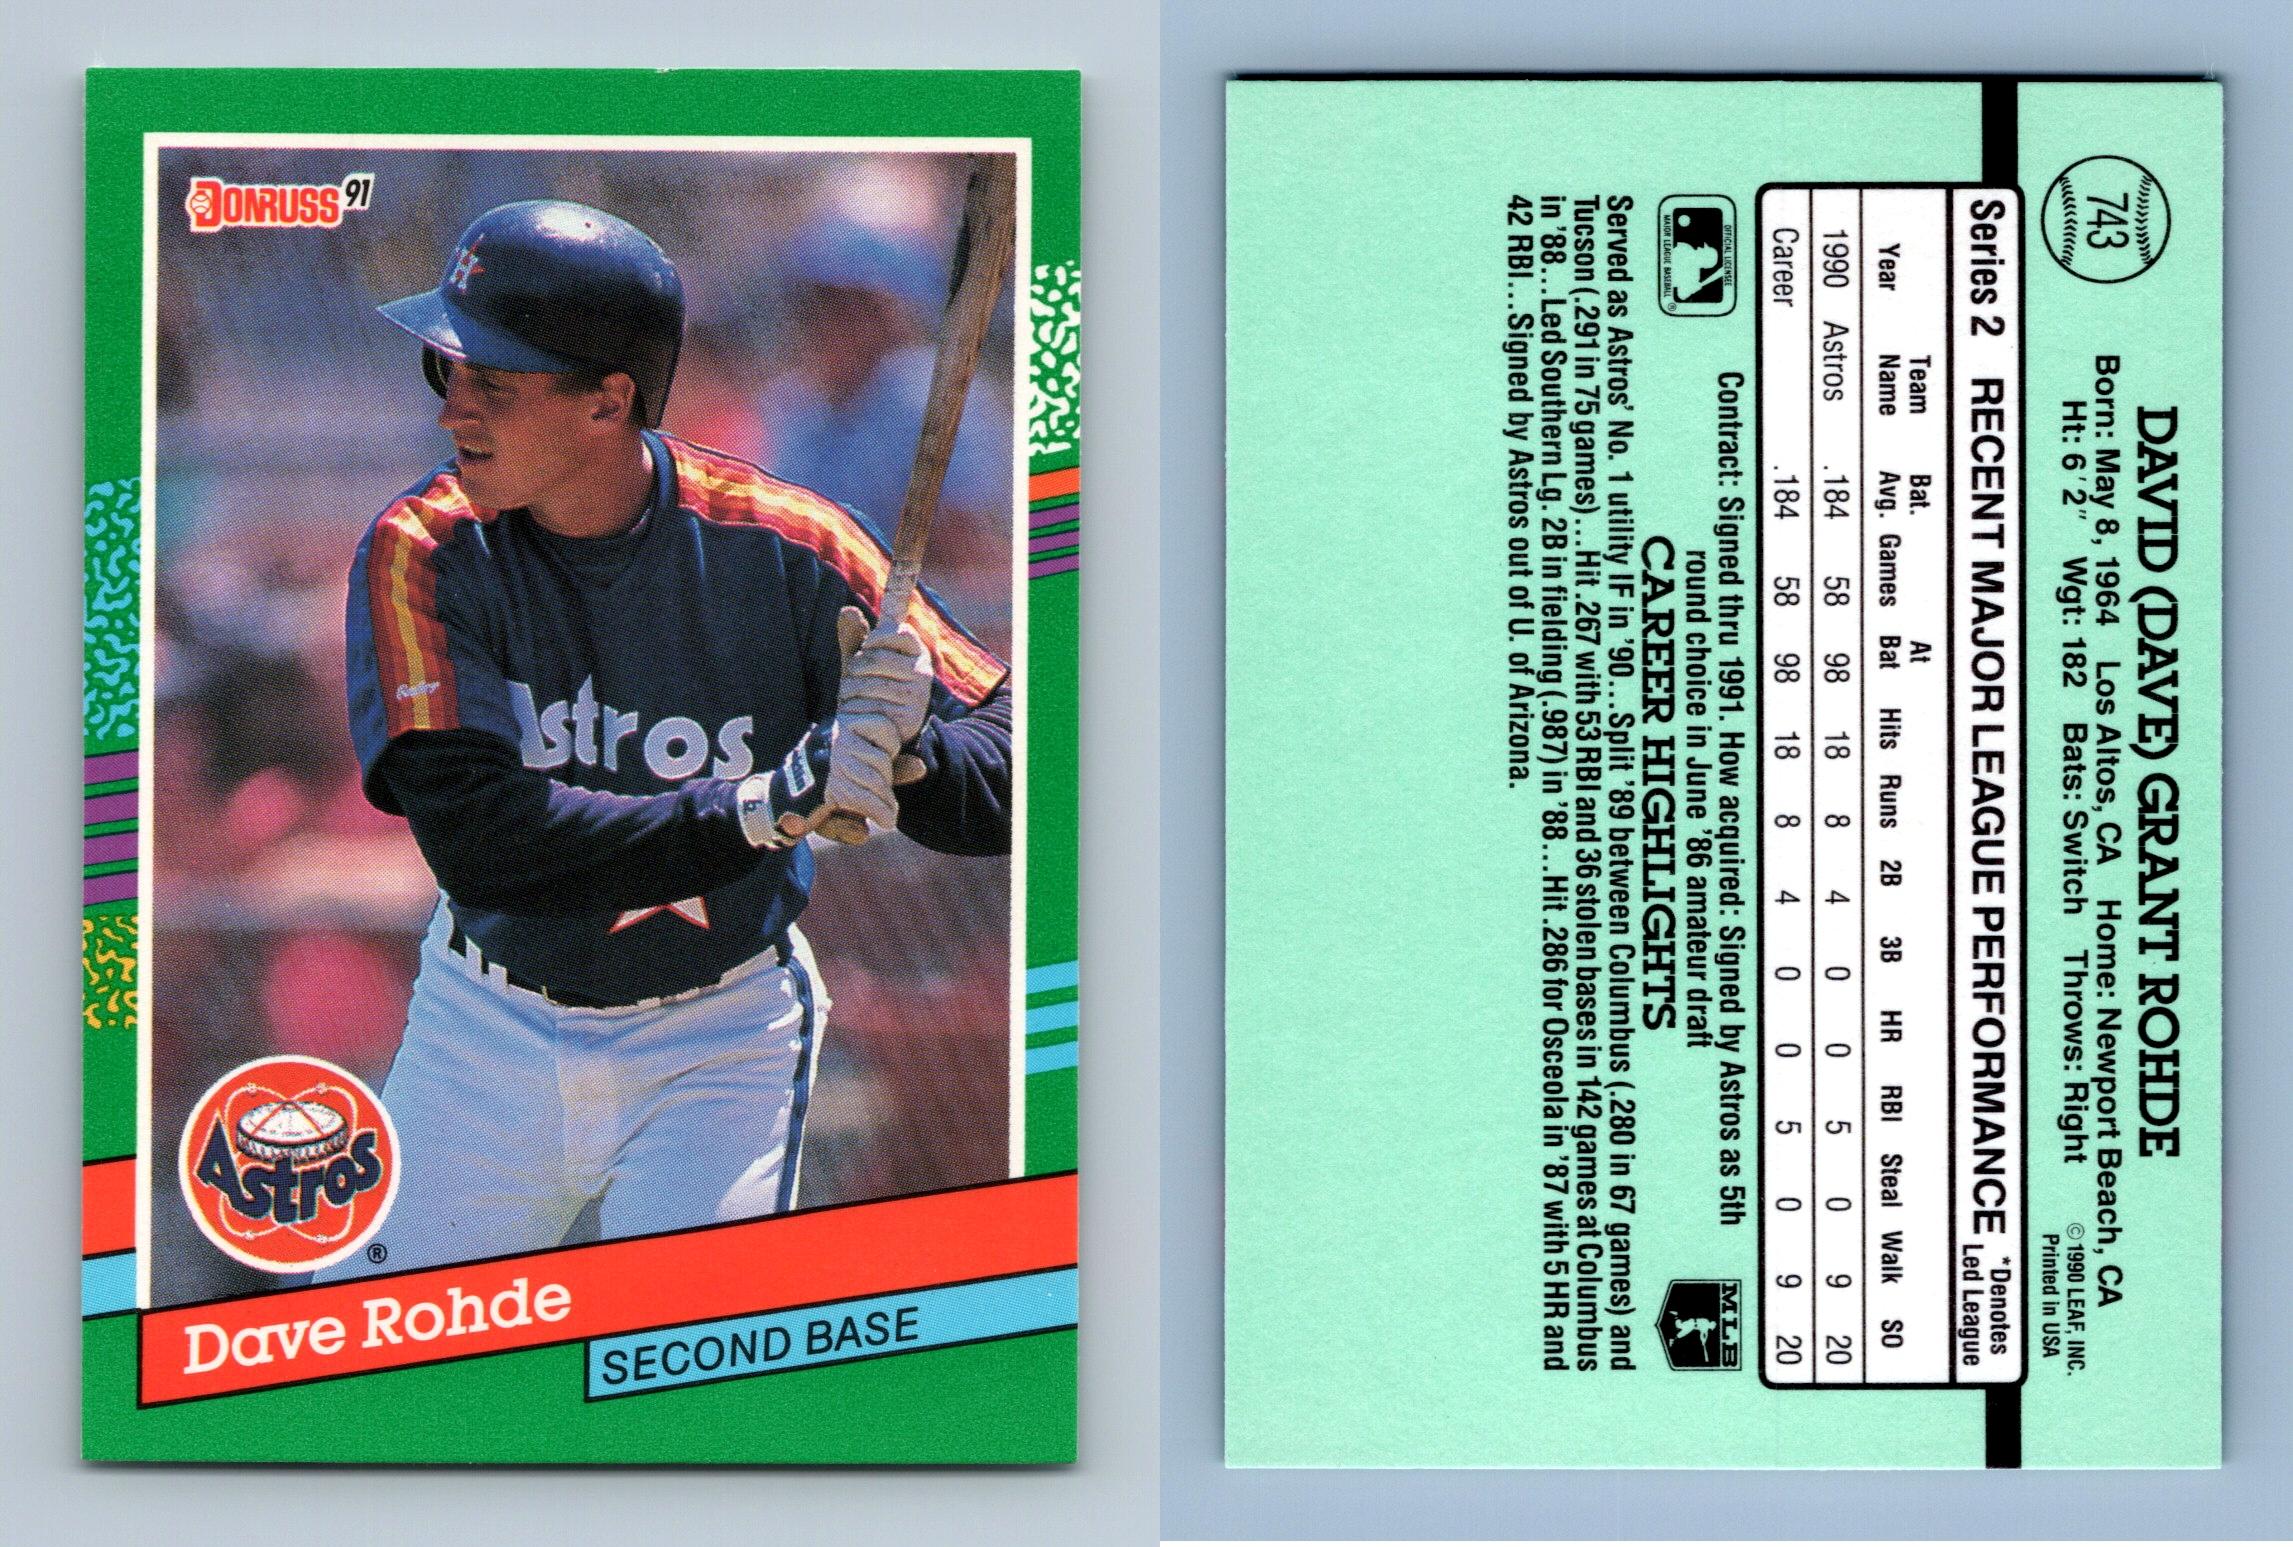 Chris Sabo - Cincinnati Reds (MLB Baseball Card) 1990 Leaf # 146